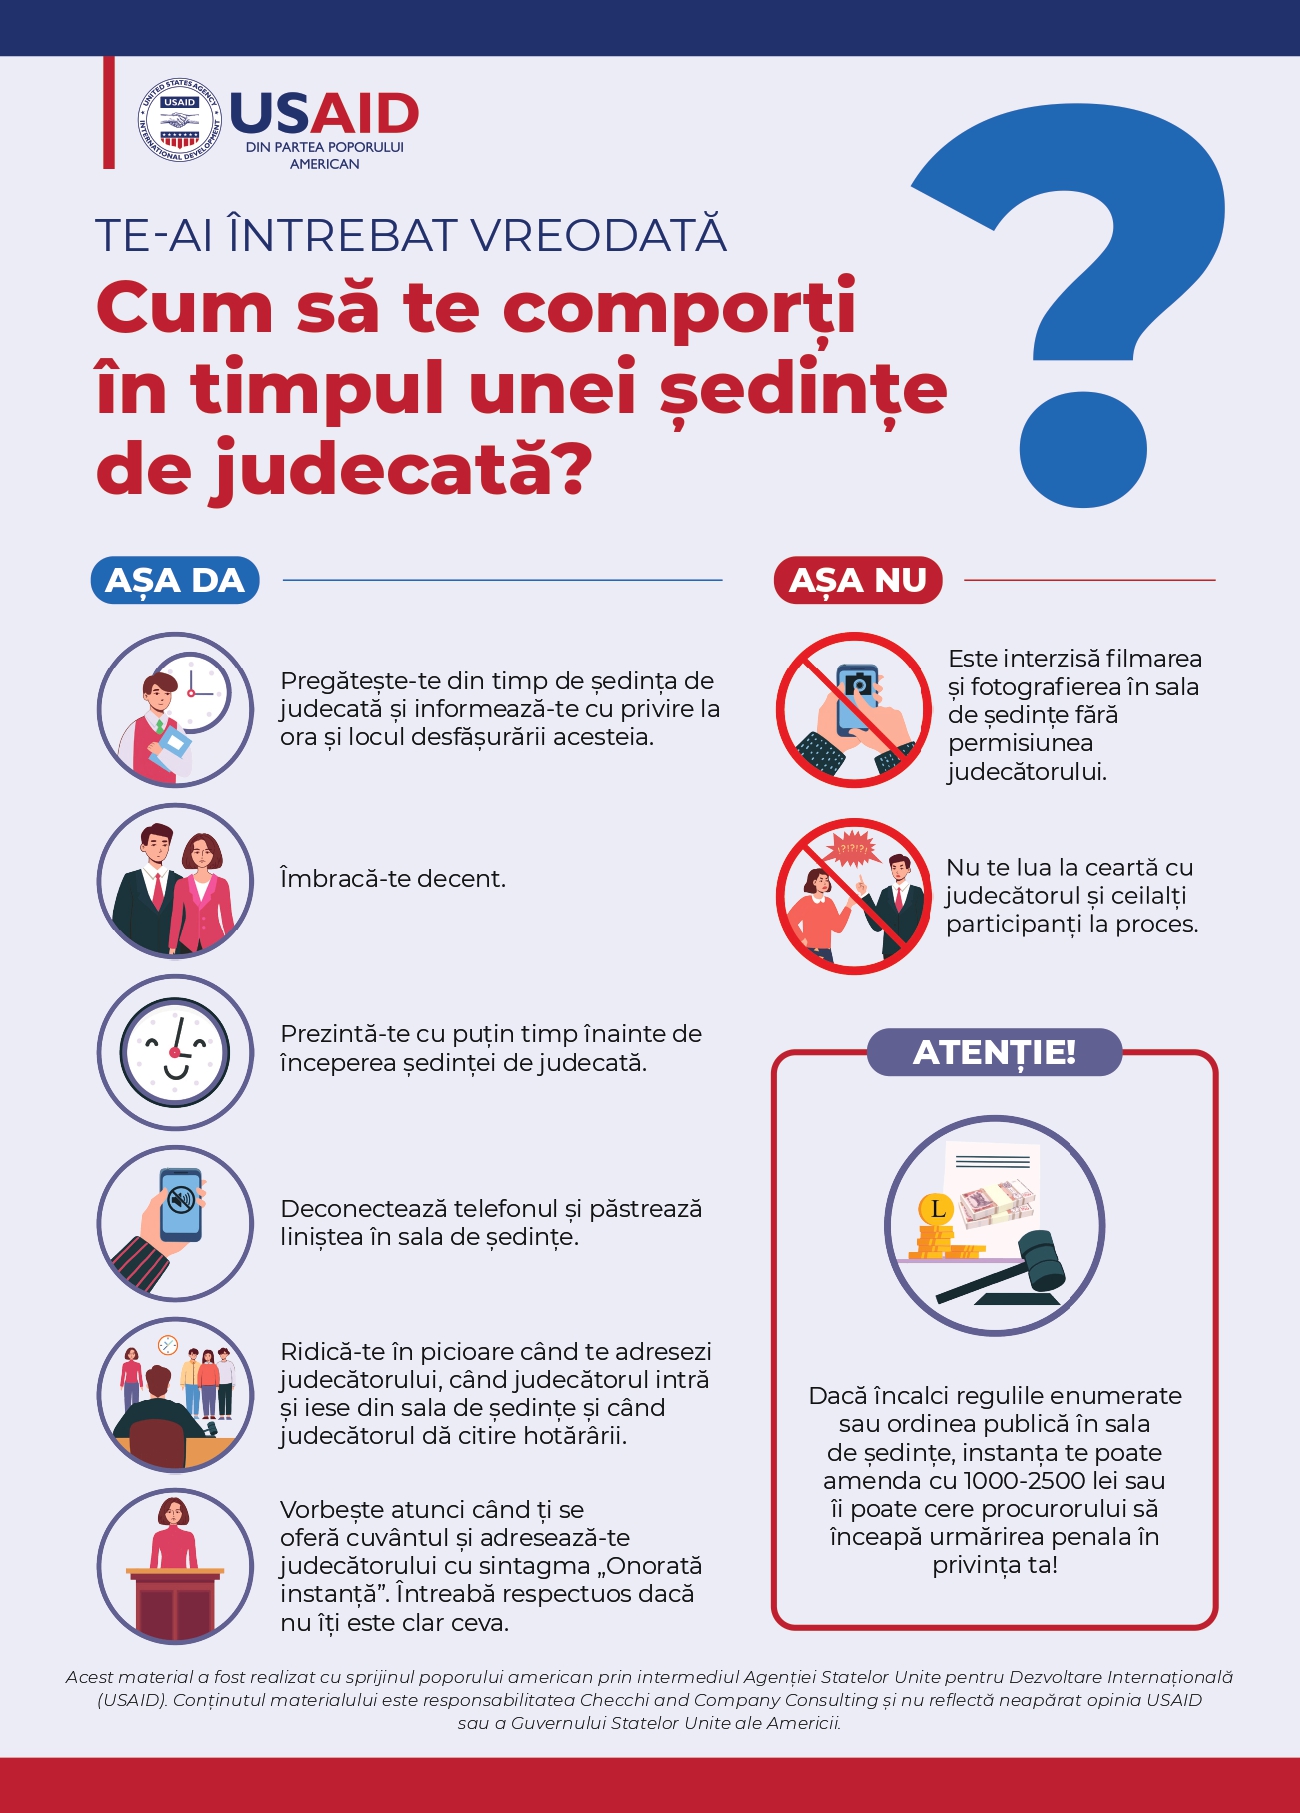 Poster cum să te comporți în ședința de judecată (versiunea română)